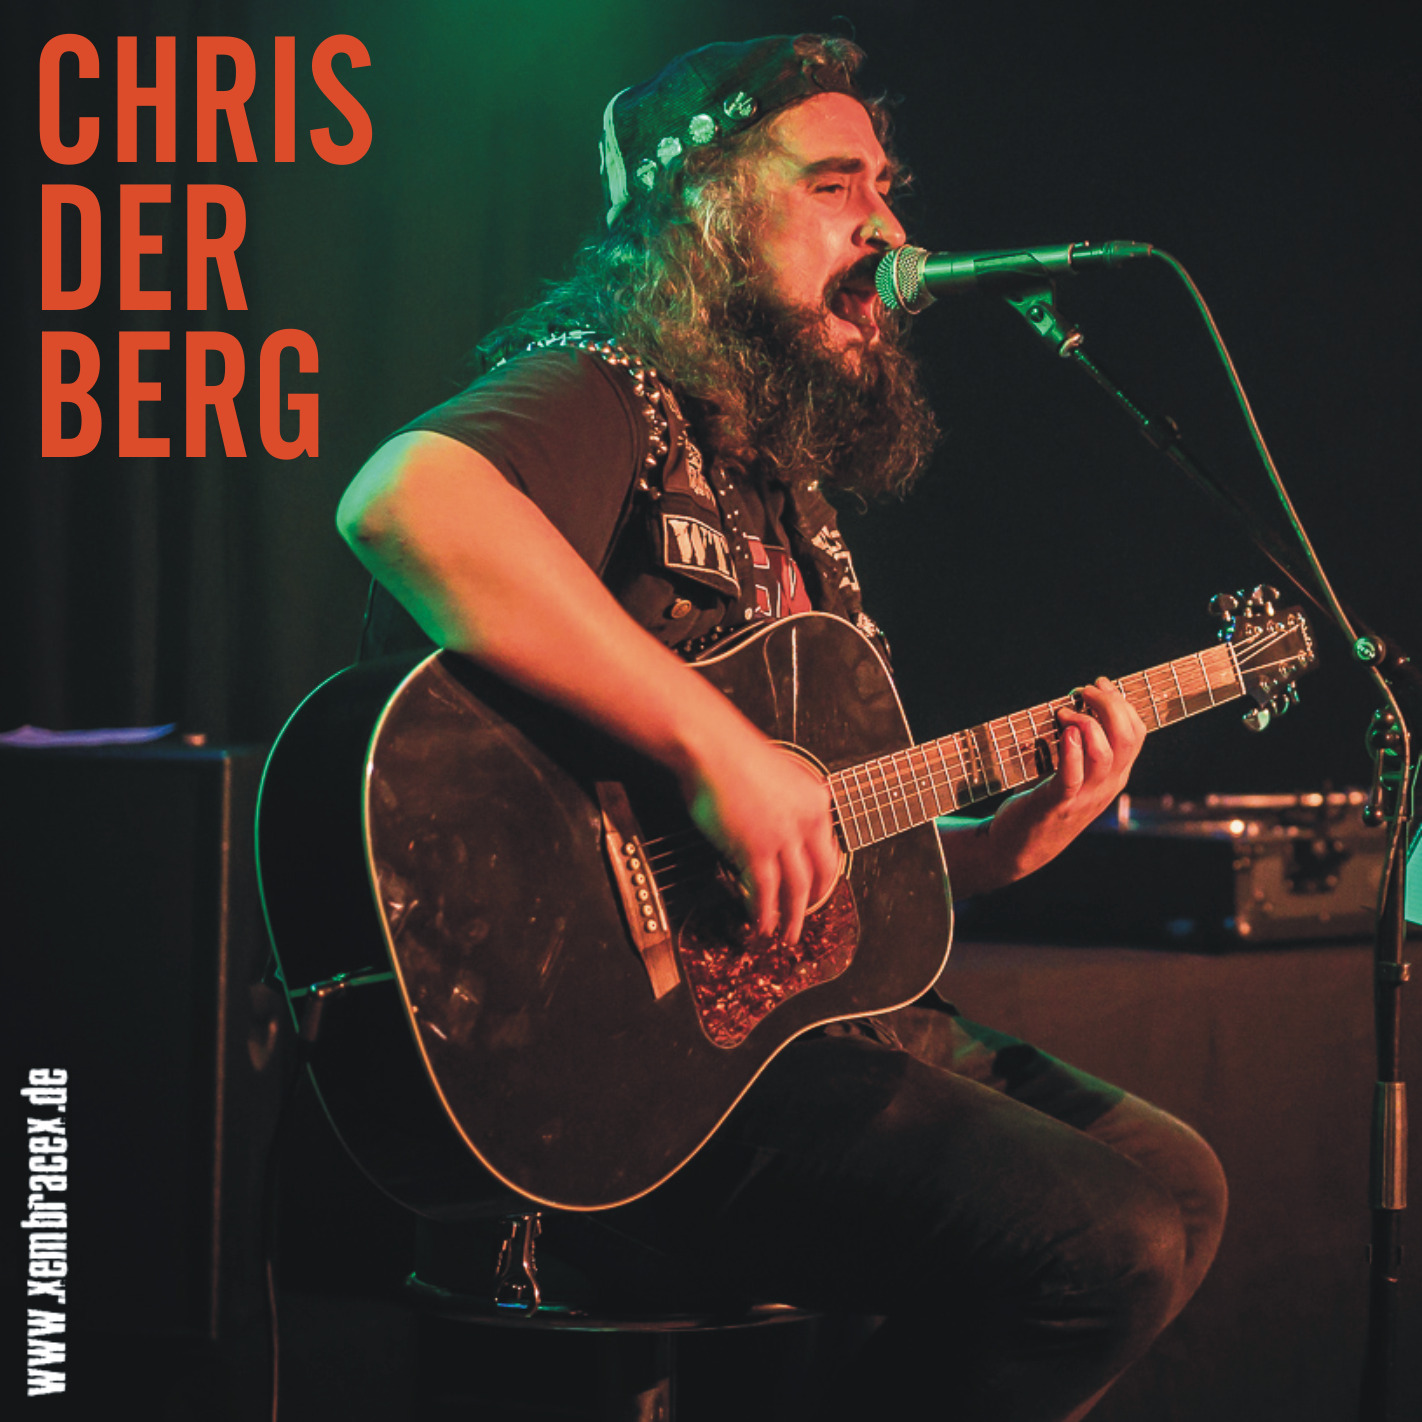 CHRIS DER BERG | Der Typ von unter anderem HELMUT COOL mit Akustik-Punk